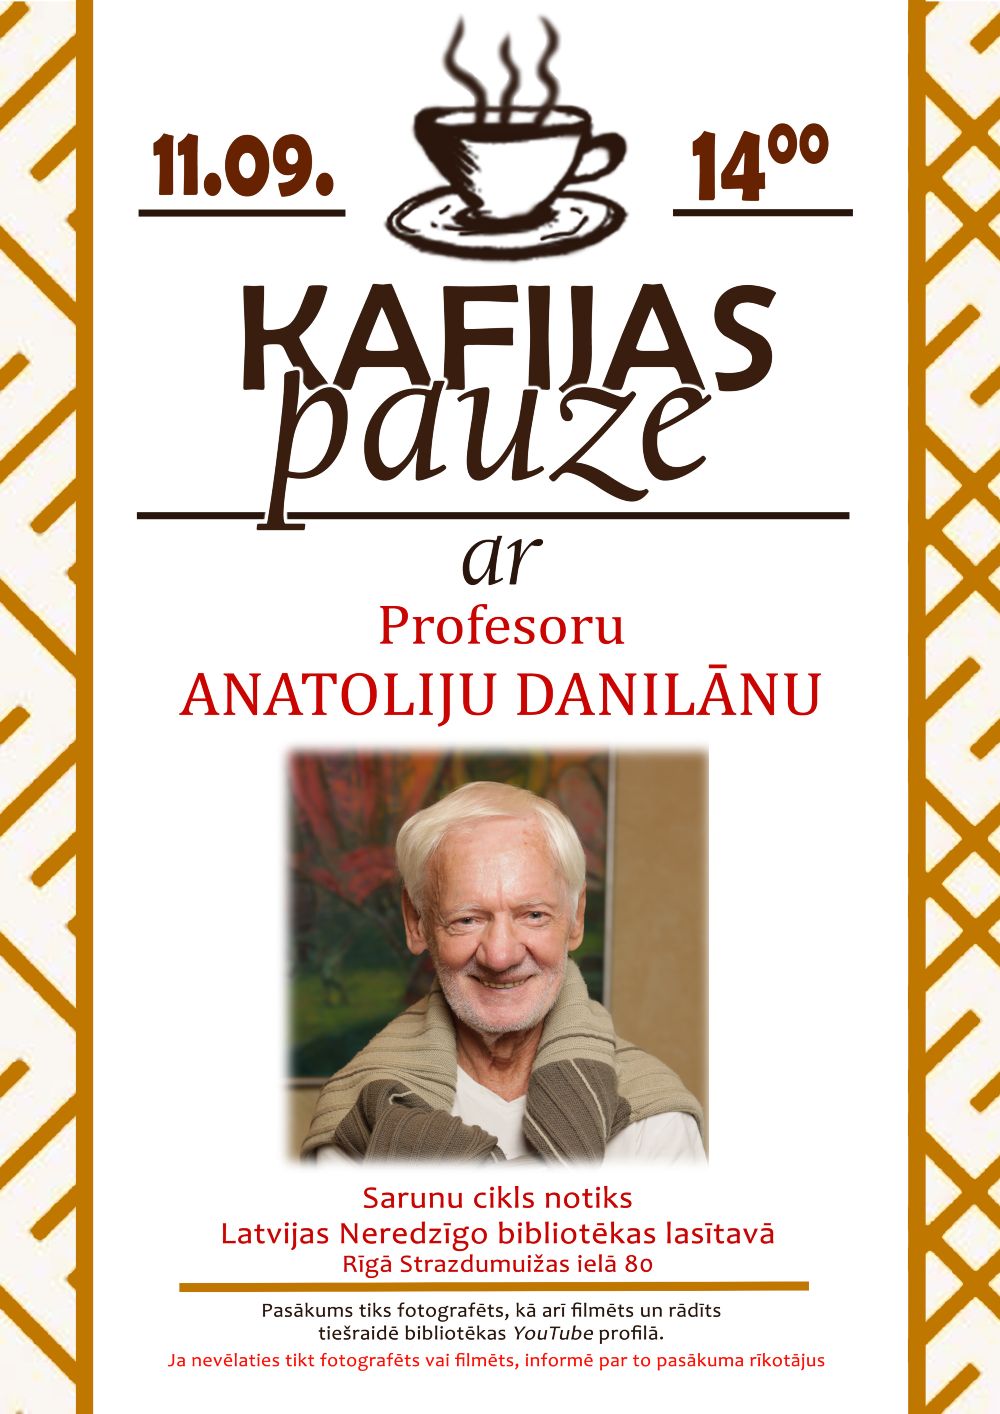 Plakāts "Kafijas pauze ar profesoru Anatoliju Danilānu"